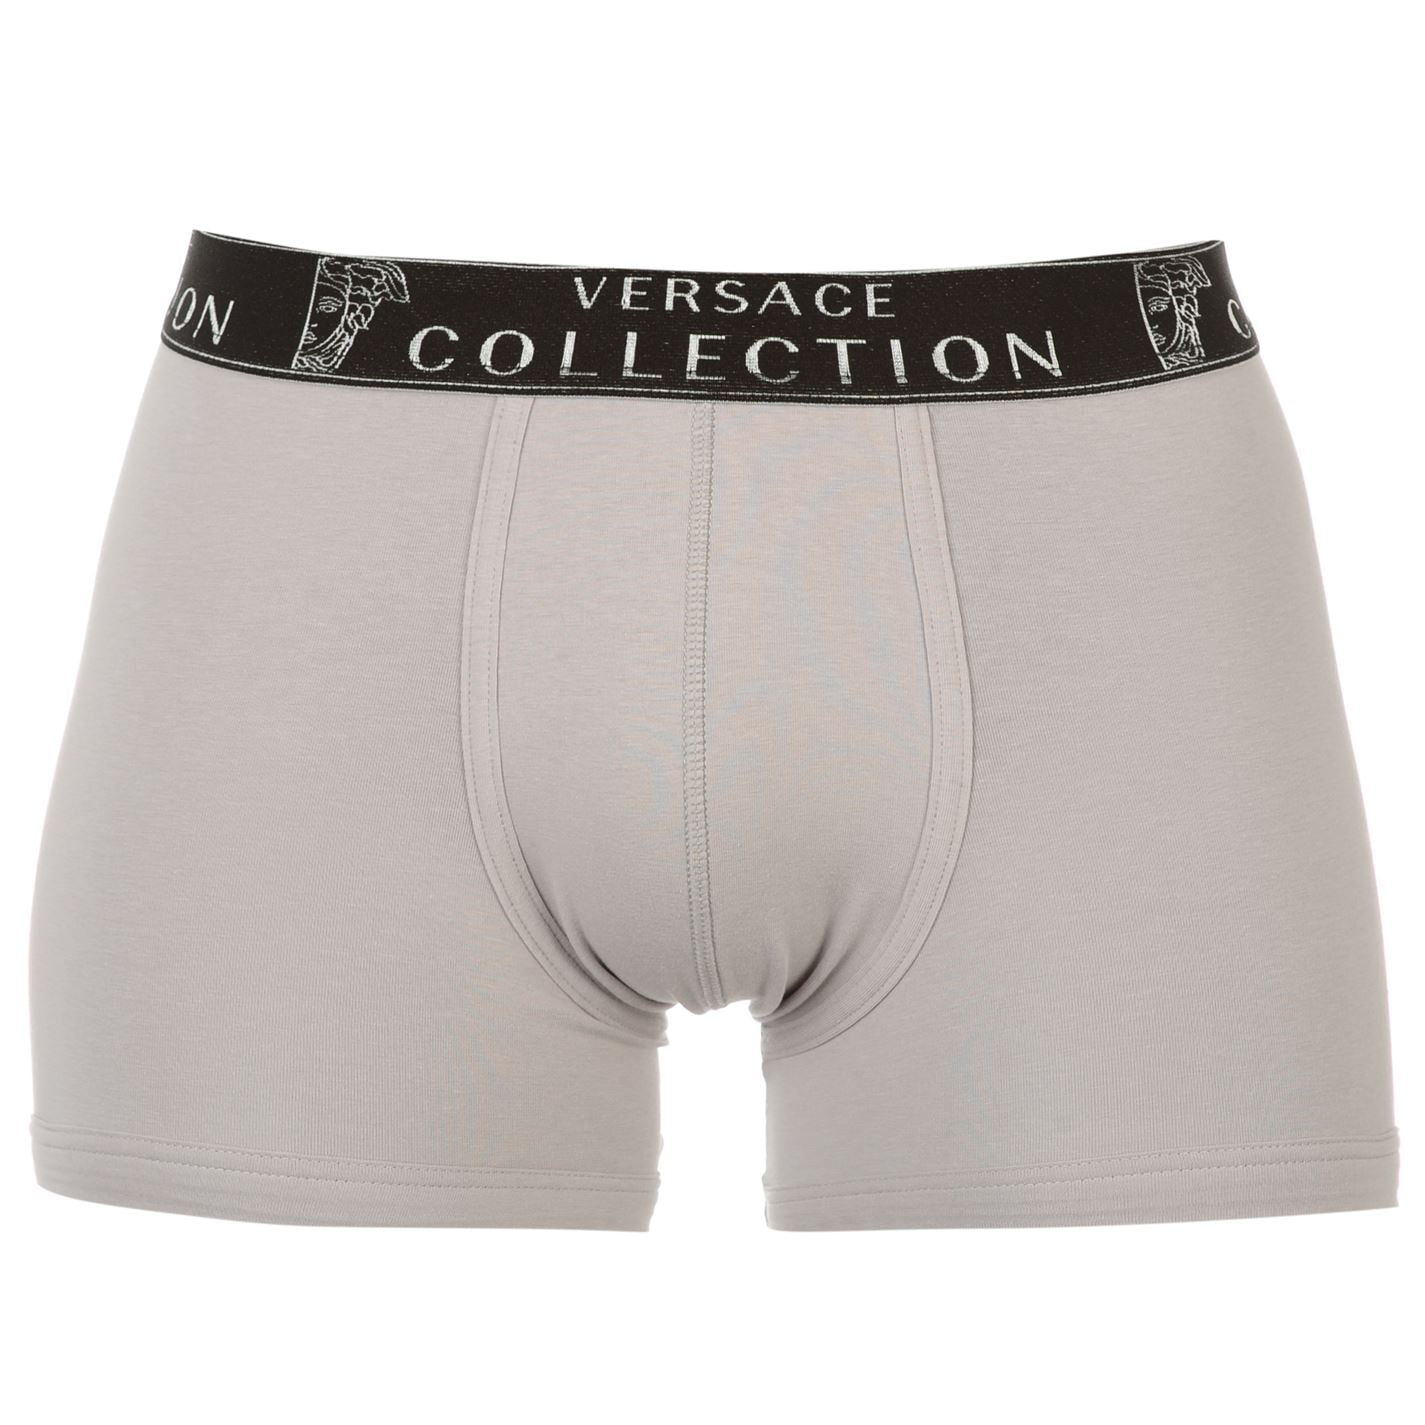 versace collection underwear